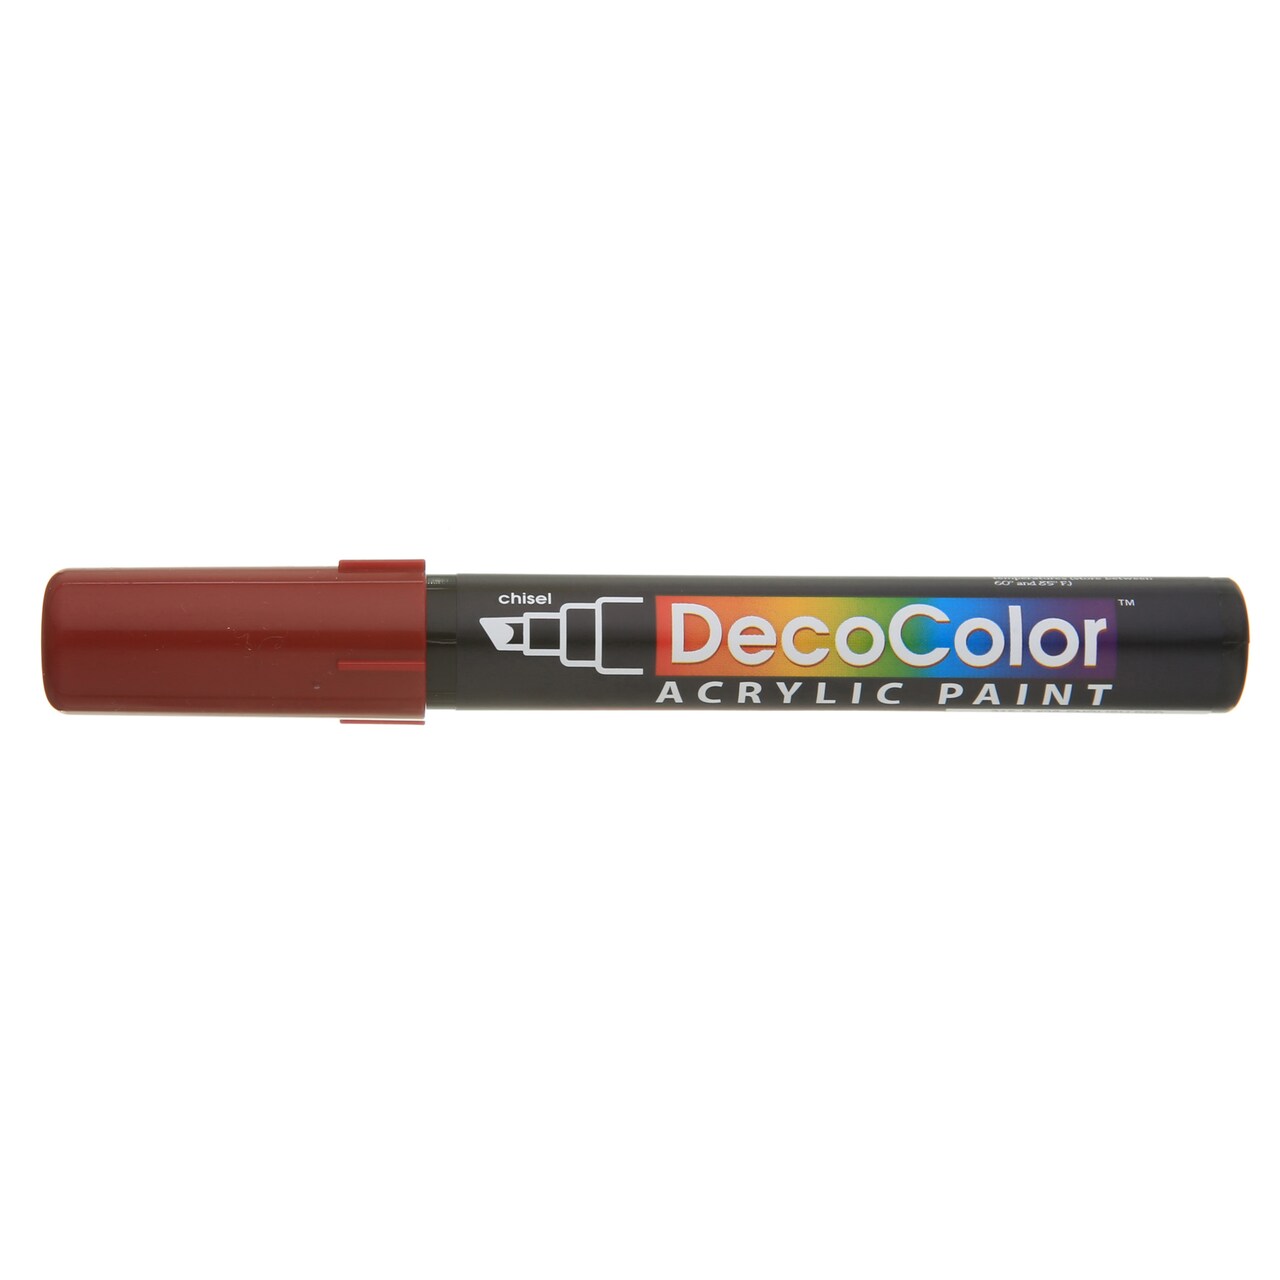 Uchida Decocolor Acrylic Paint Marker, Chisel, English Red